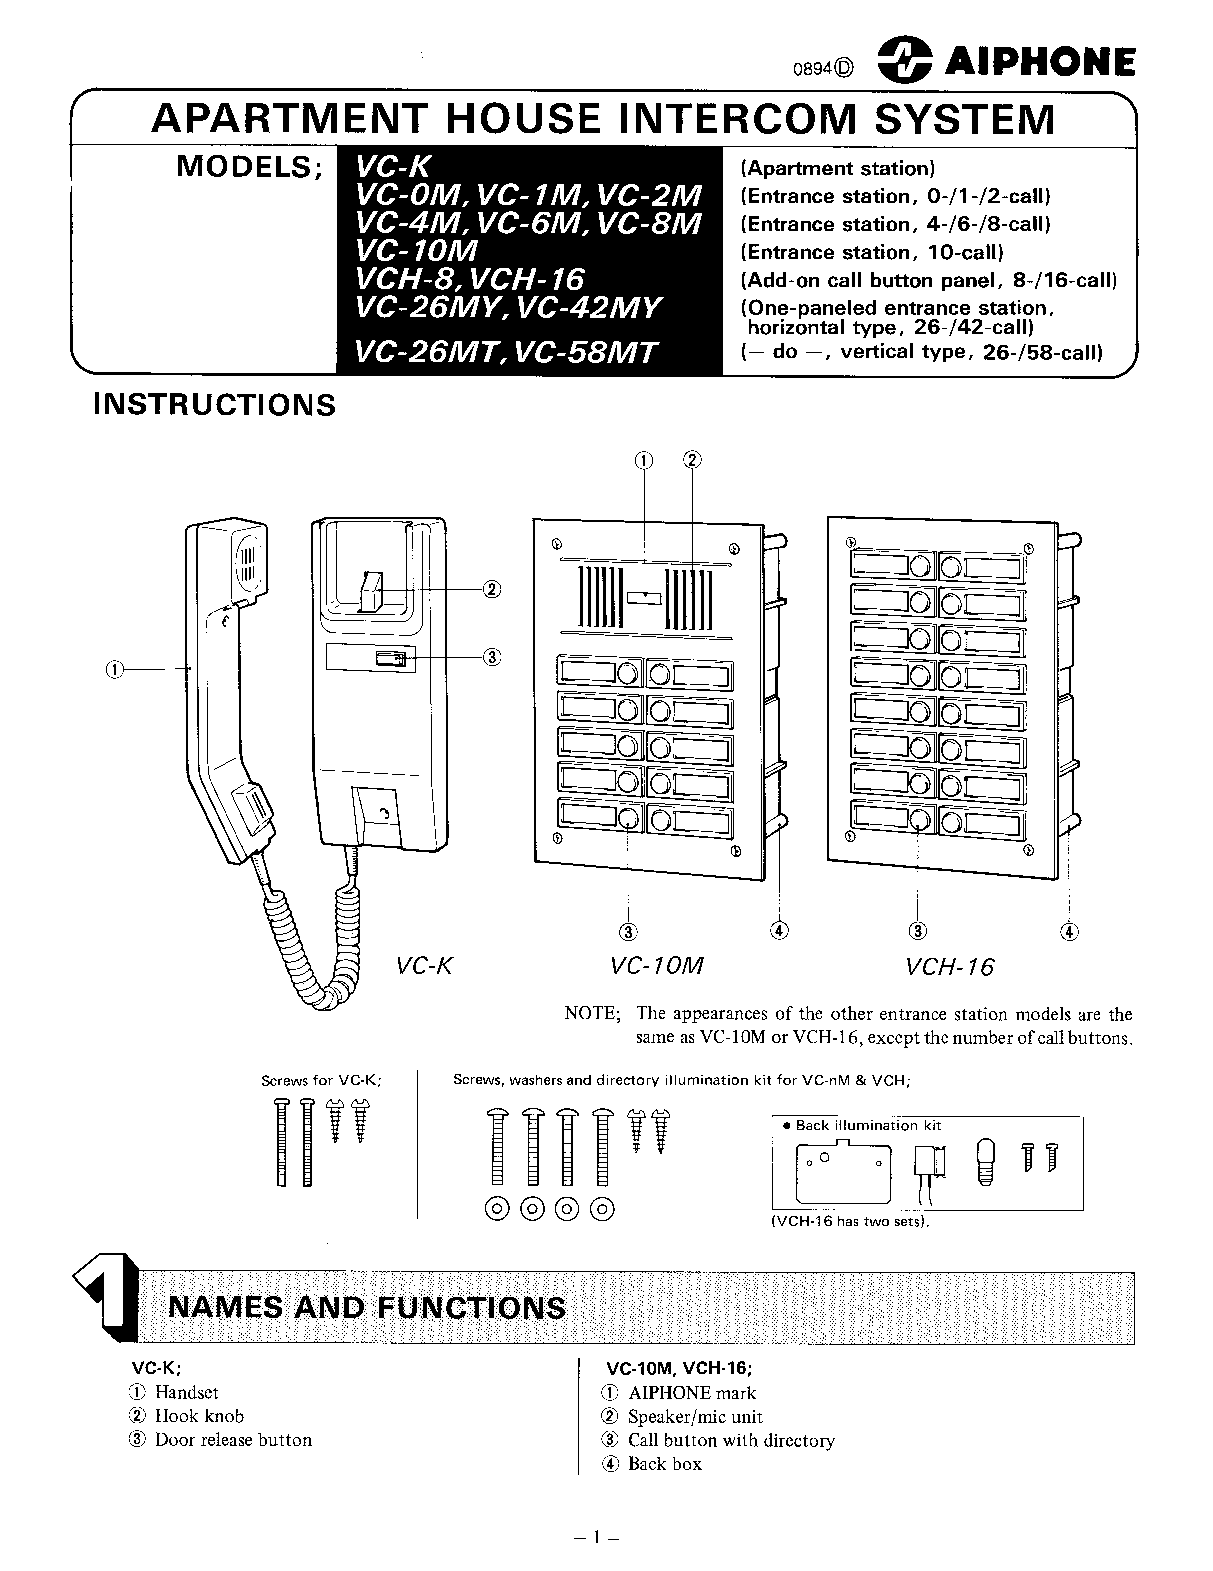 Aiphone VCH-16, VC-6M, VC-58MT, VCH-8, VC-42MY User Manual